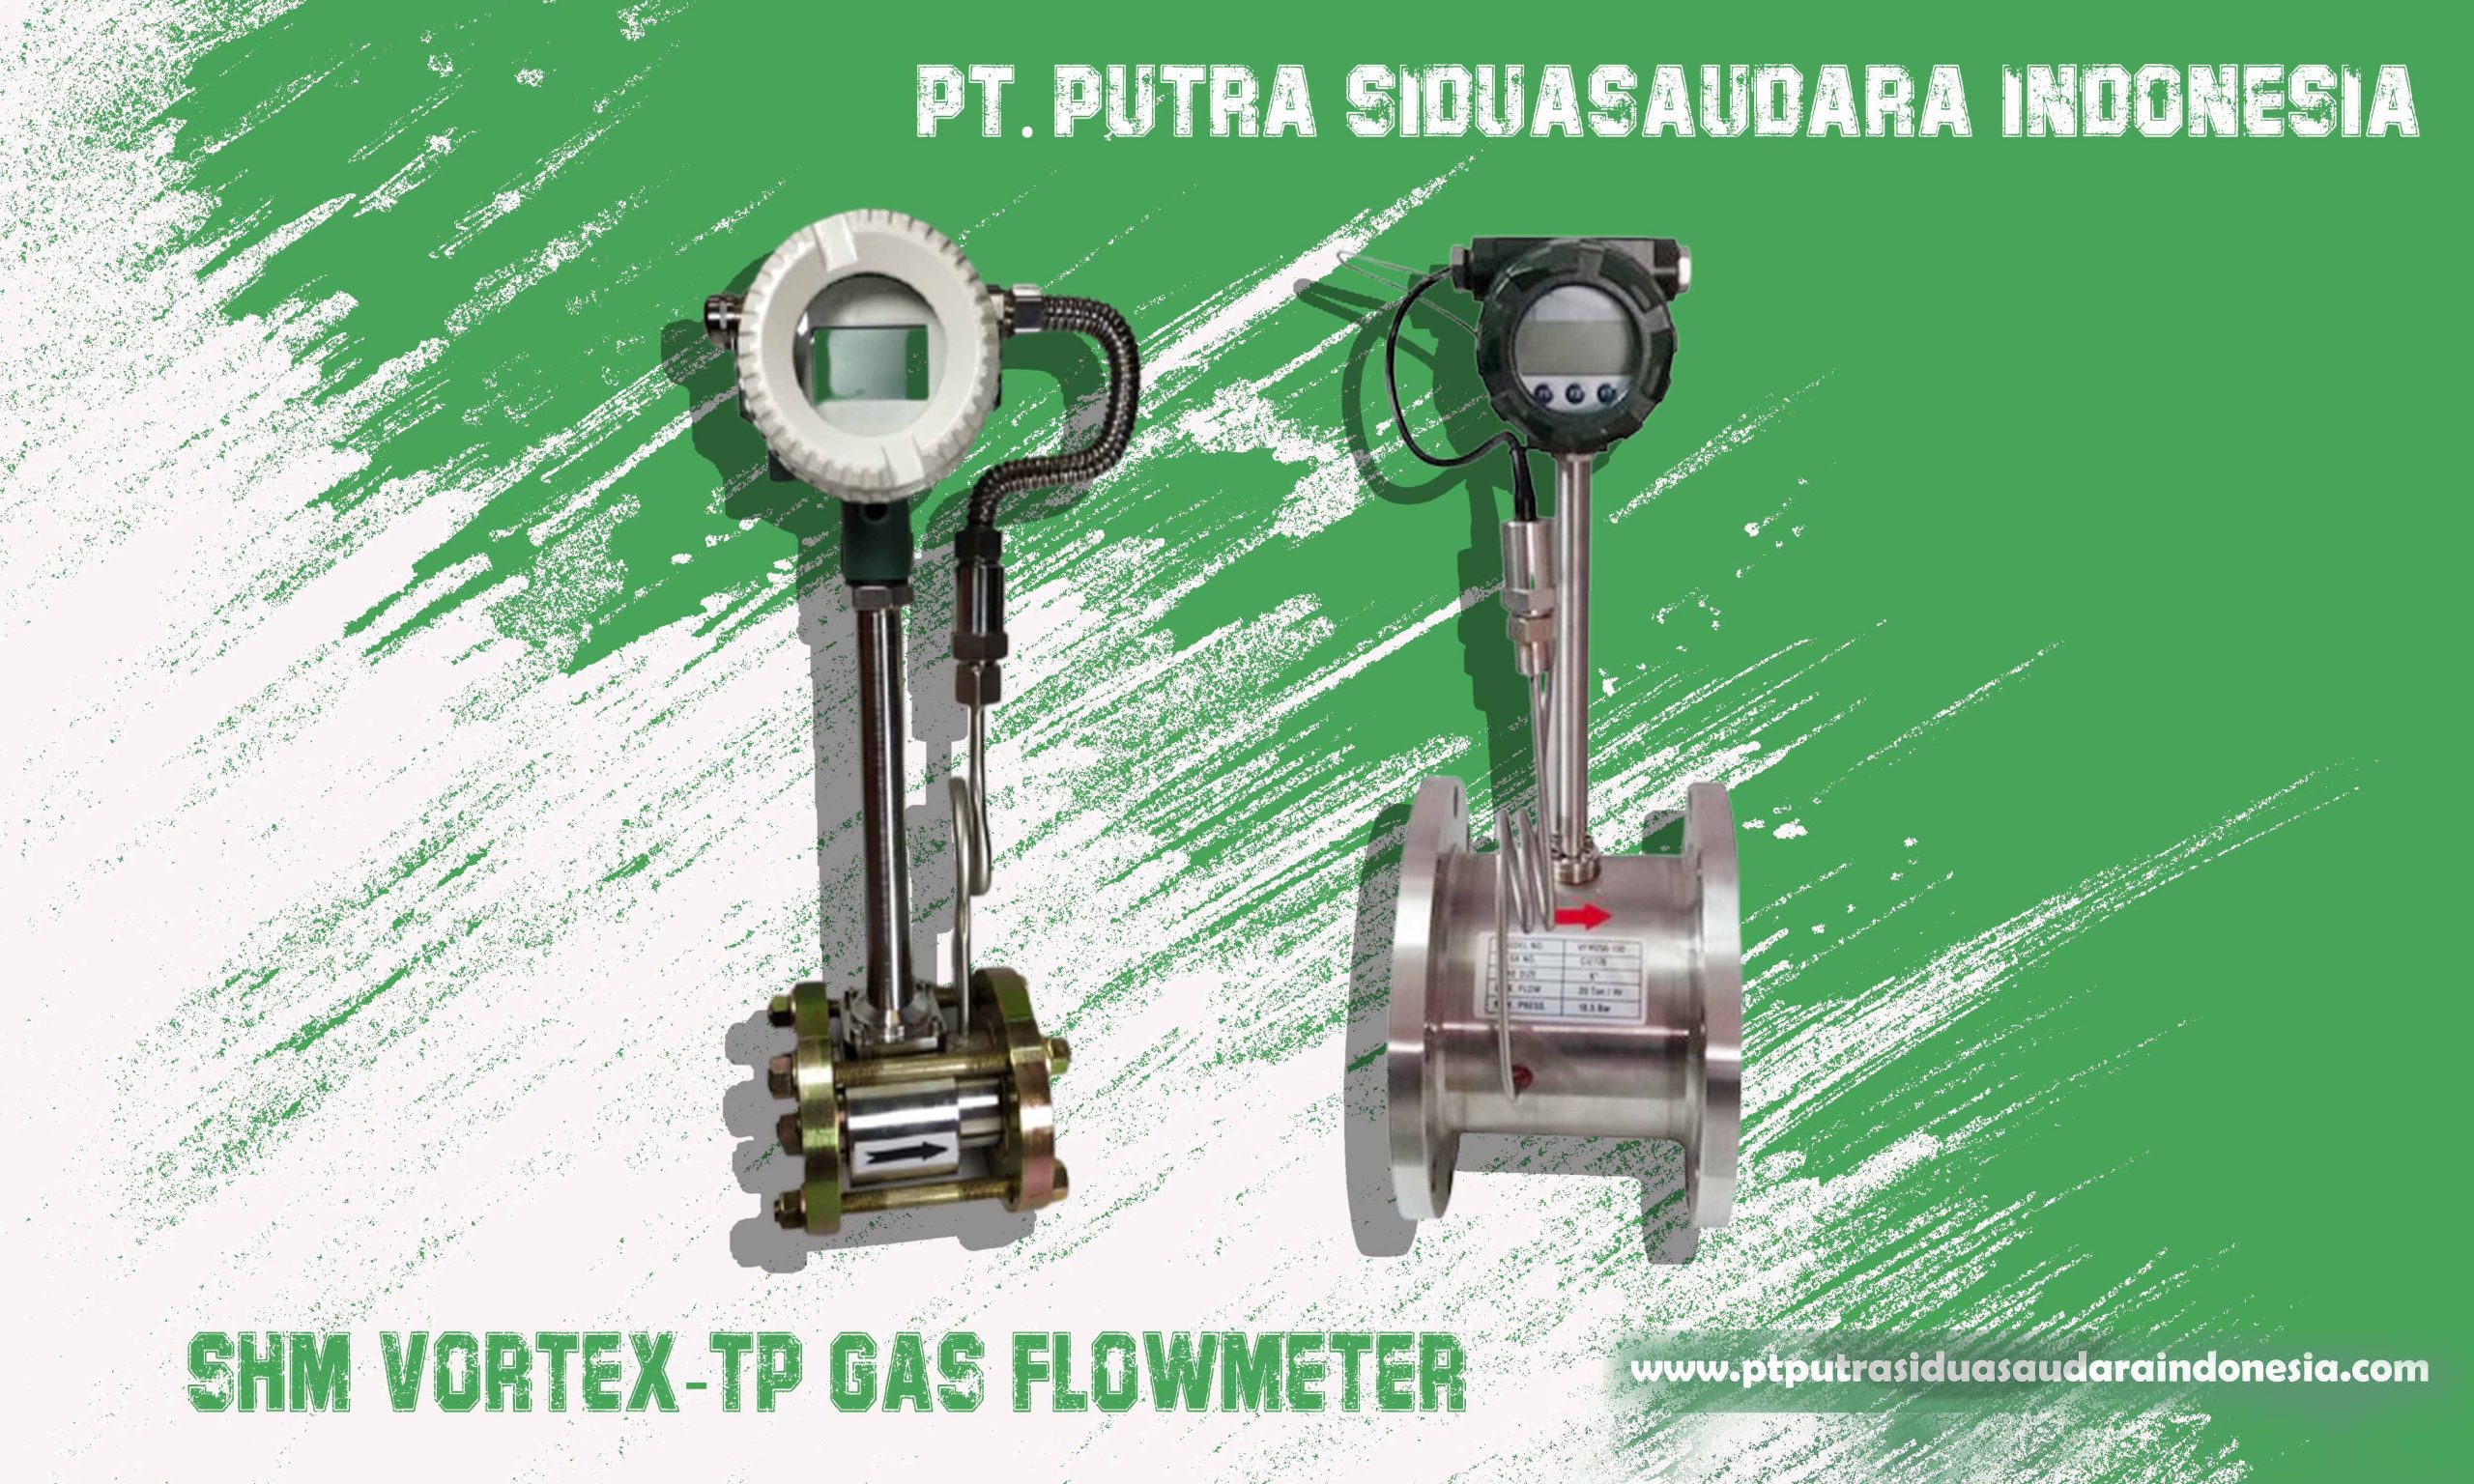 GAS FLOWMETER VORTEX-TP SHM